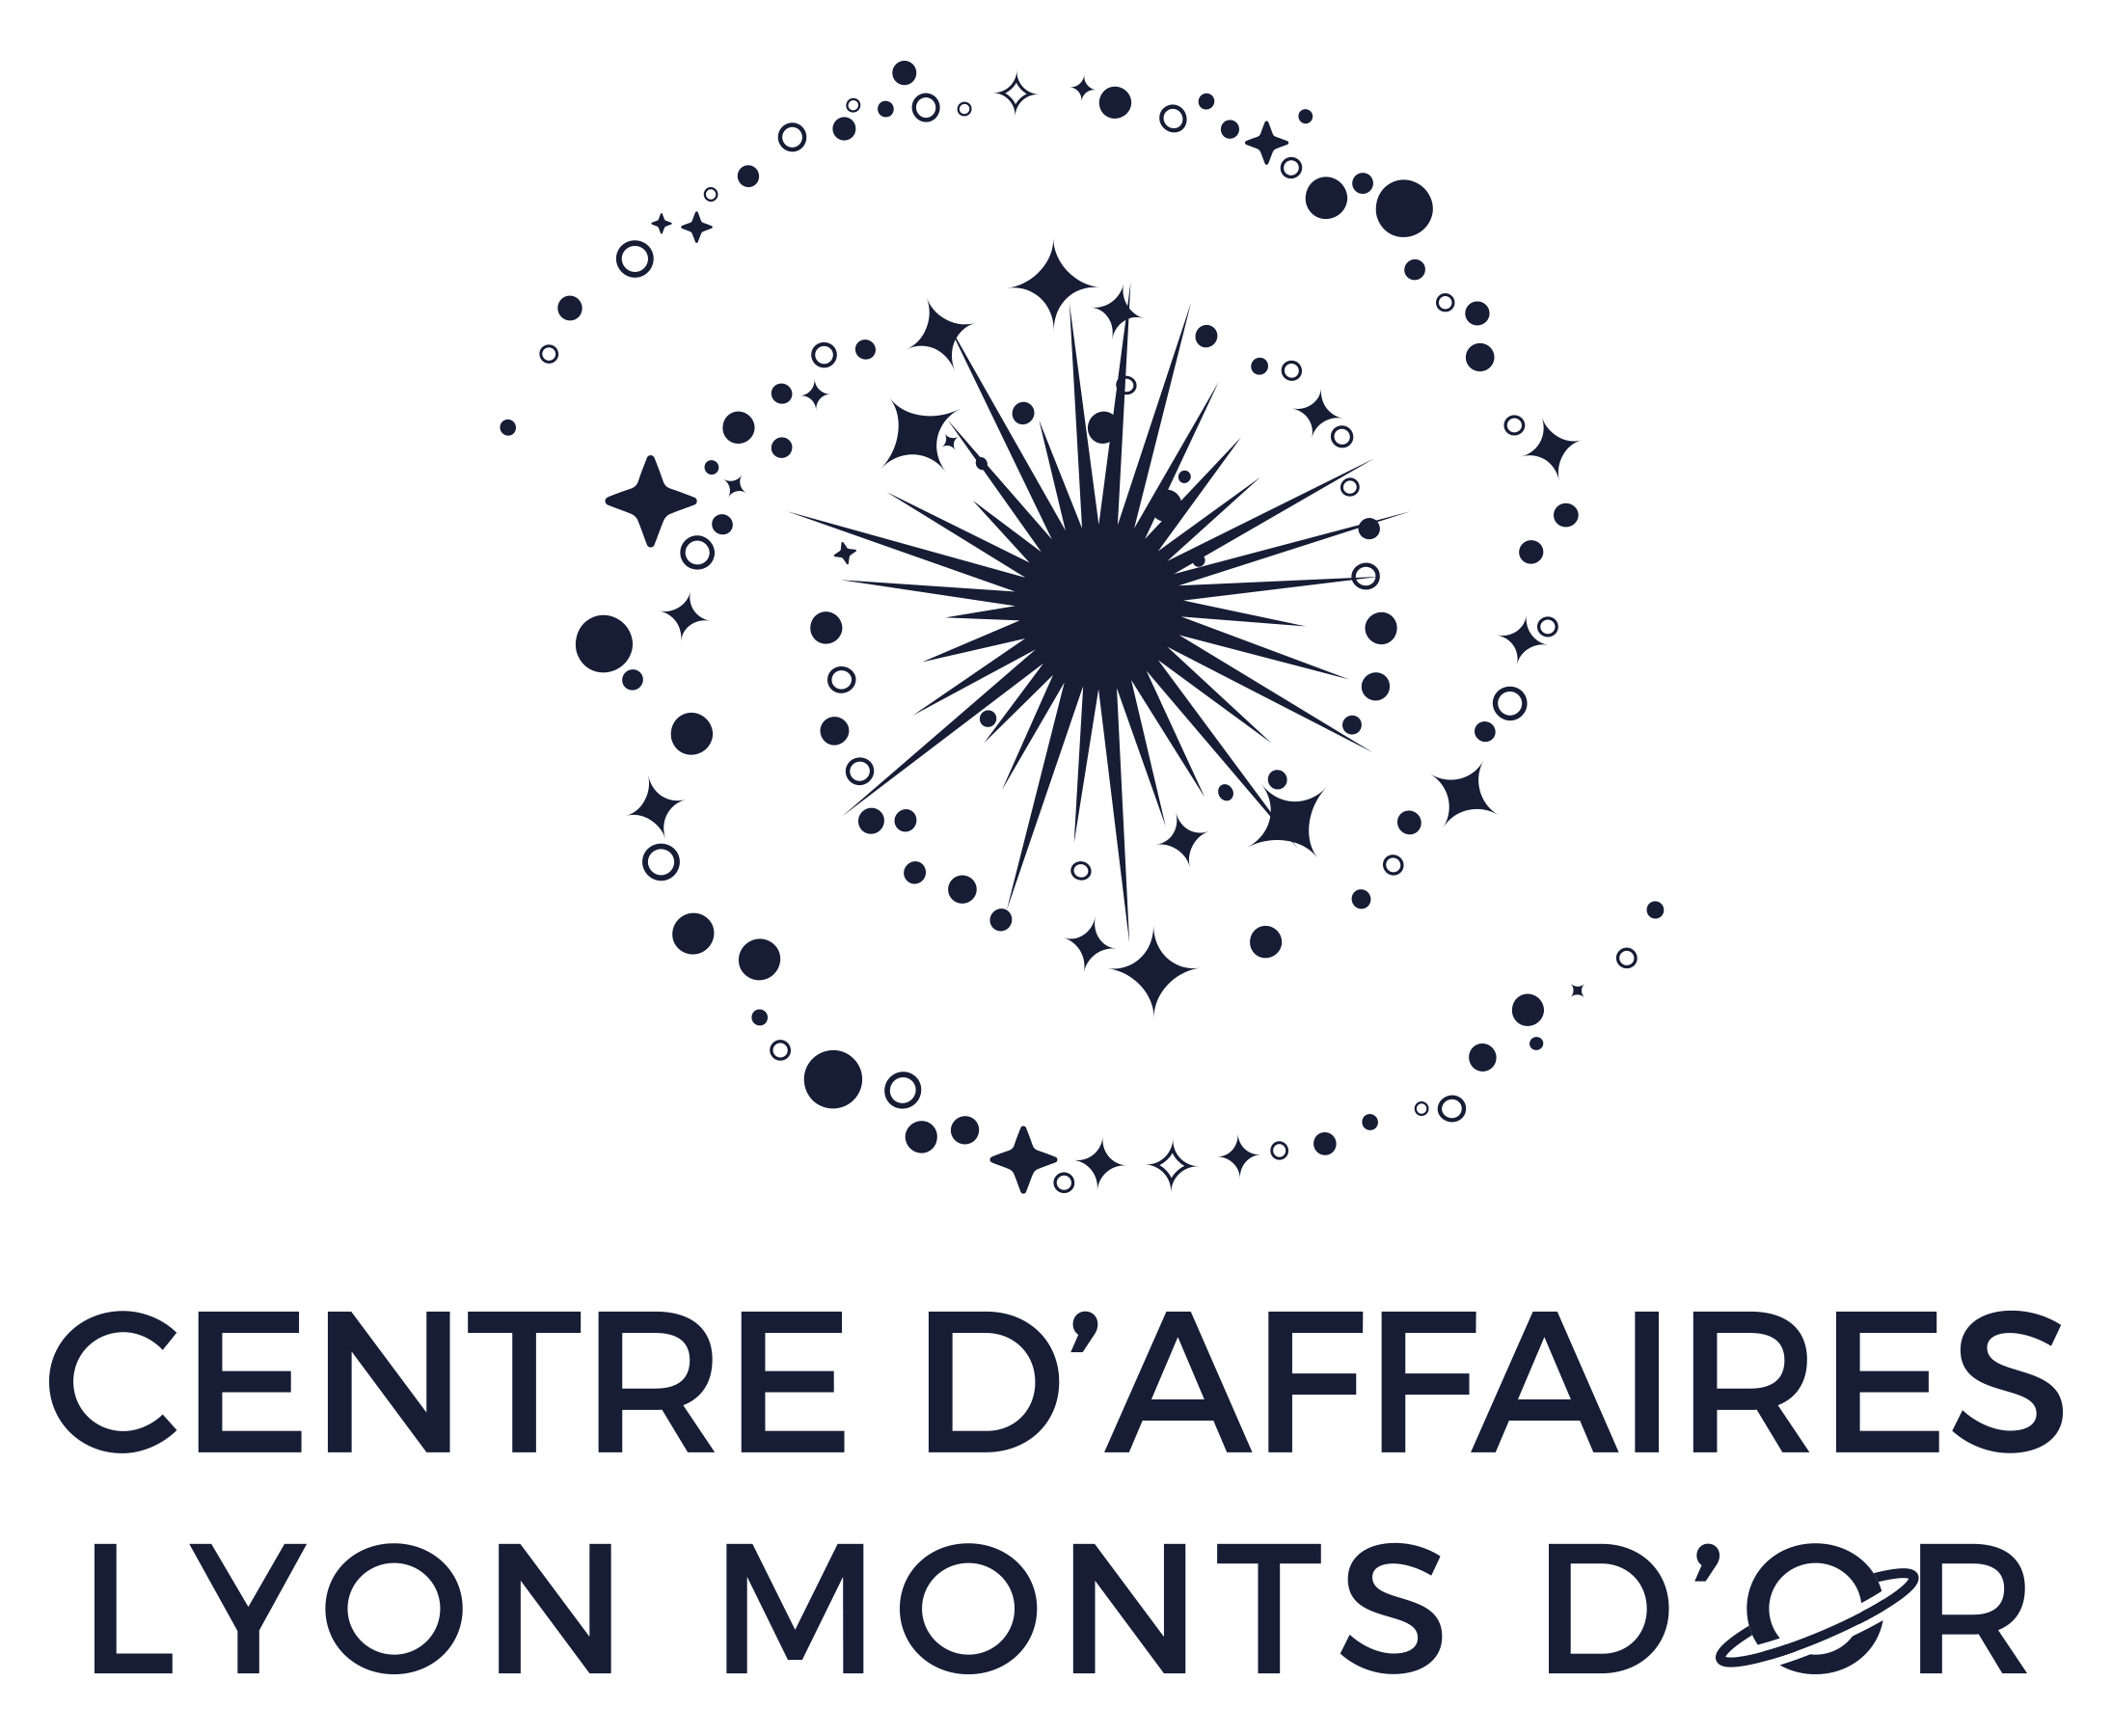 Centre d'affaires Lyon Monts d'Or